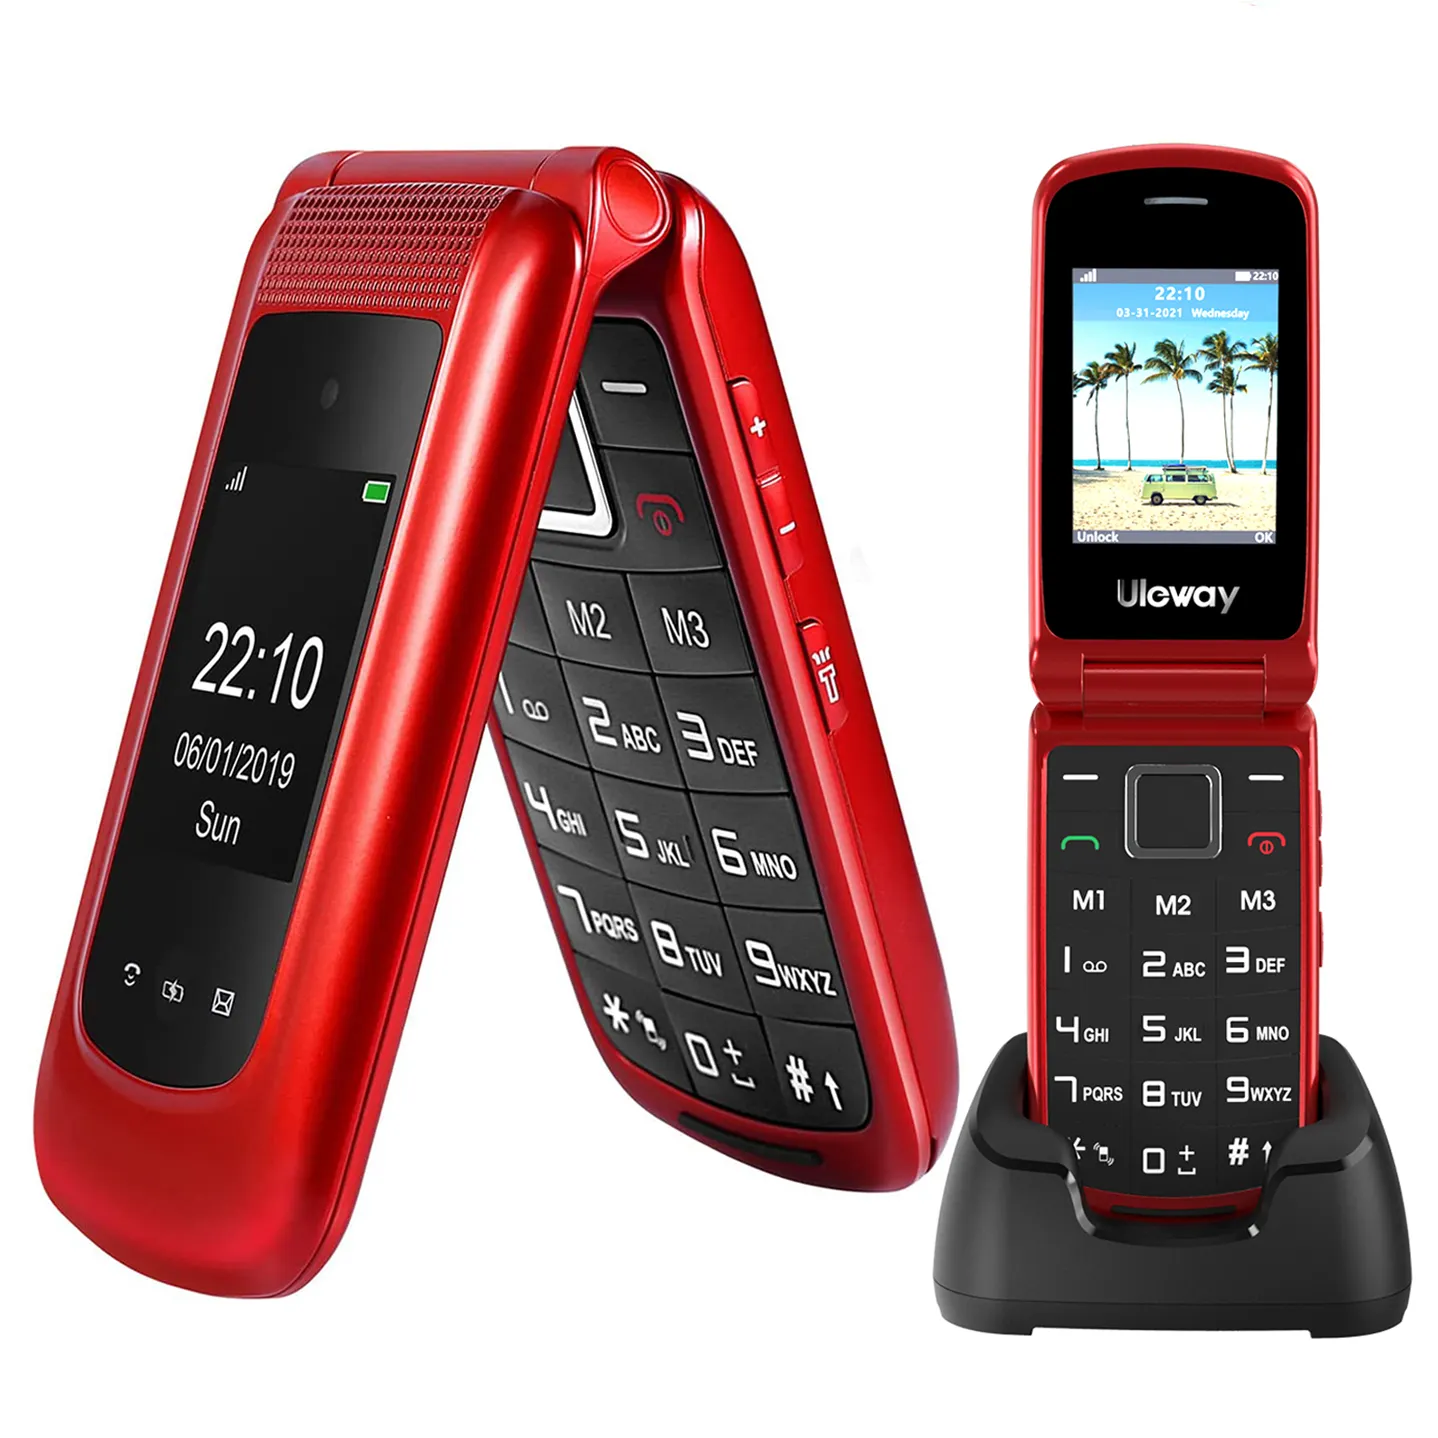 من المصنع جودة عالية غير قابلة للفتح شريط g شاشة 4 + + مقفلة هاتف محمول مزدوج 4g كبير السن بدون عقد-أحمر